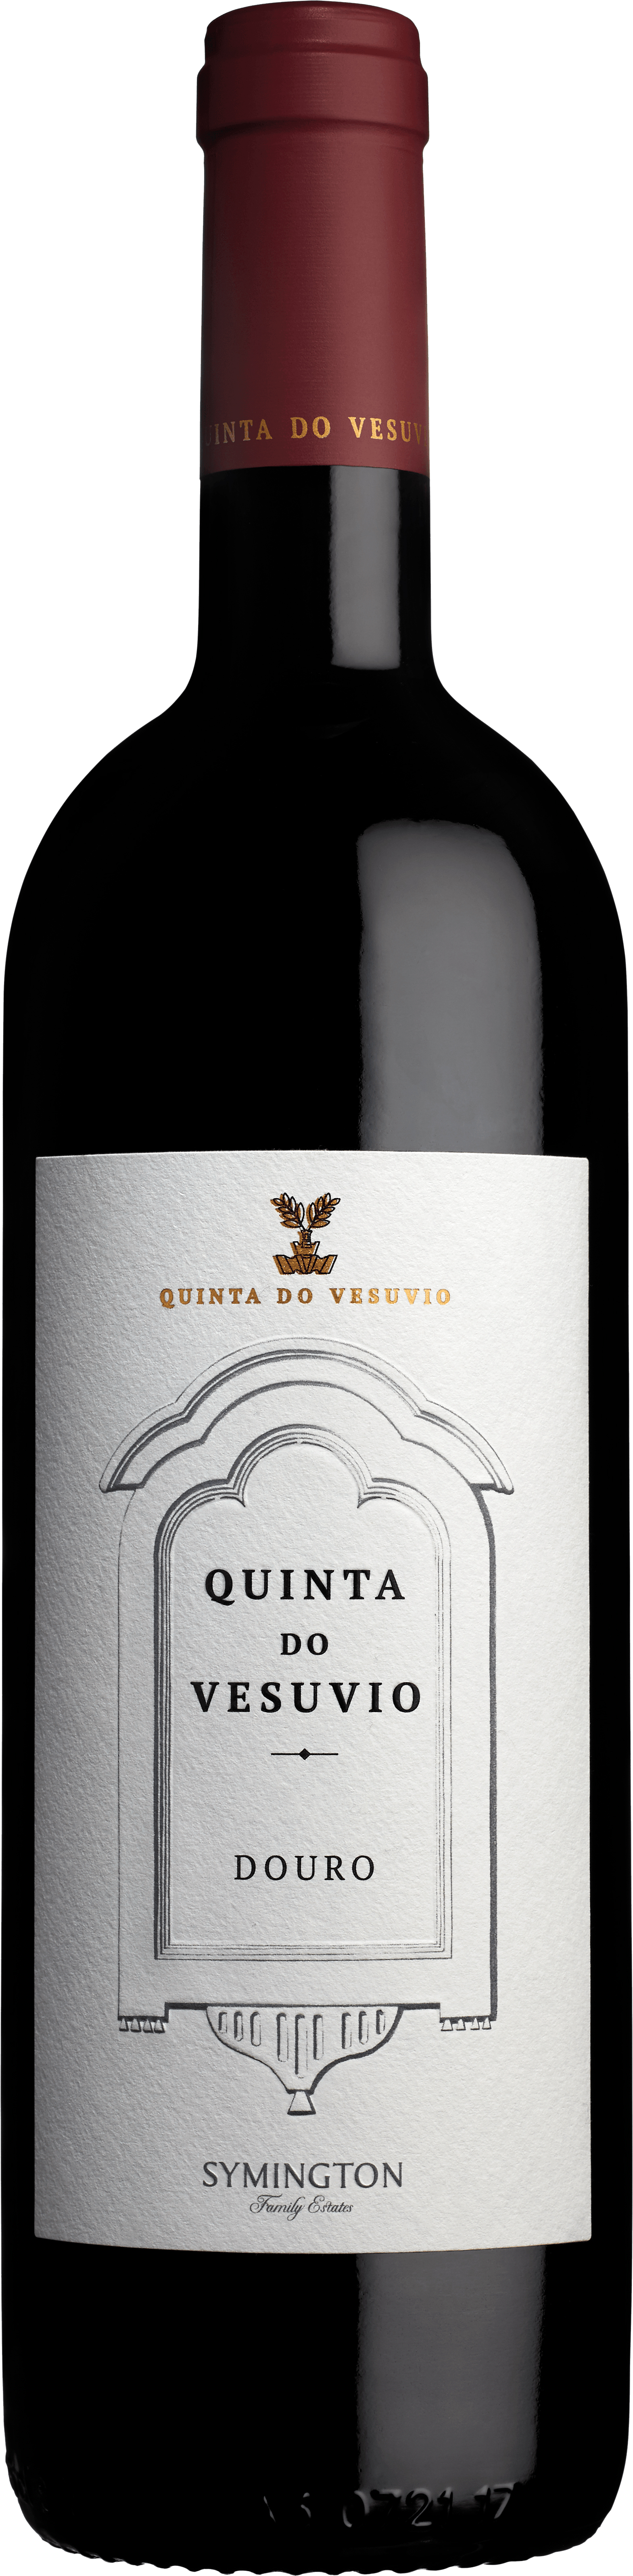 Product Image for QUINTA DO VESUVIO DOURO RED 2019